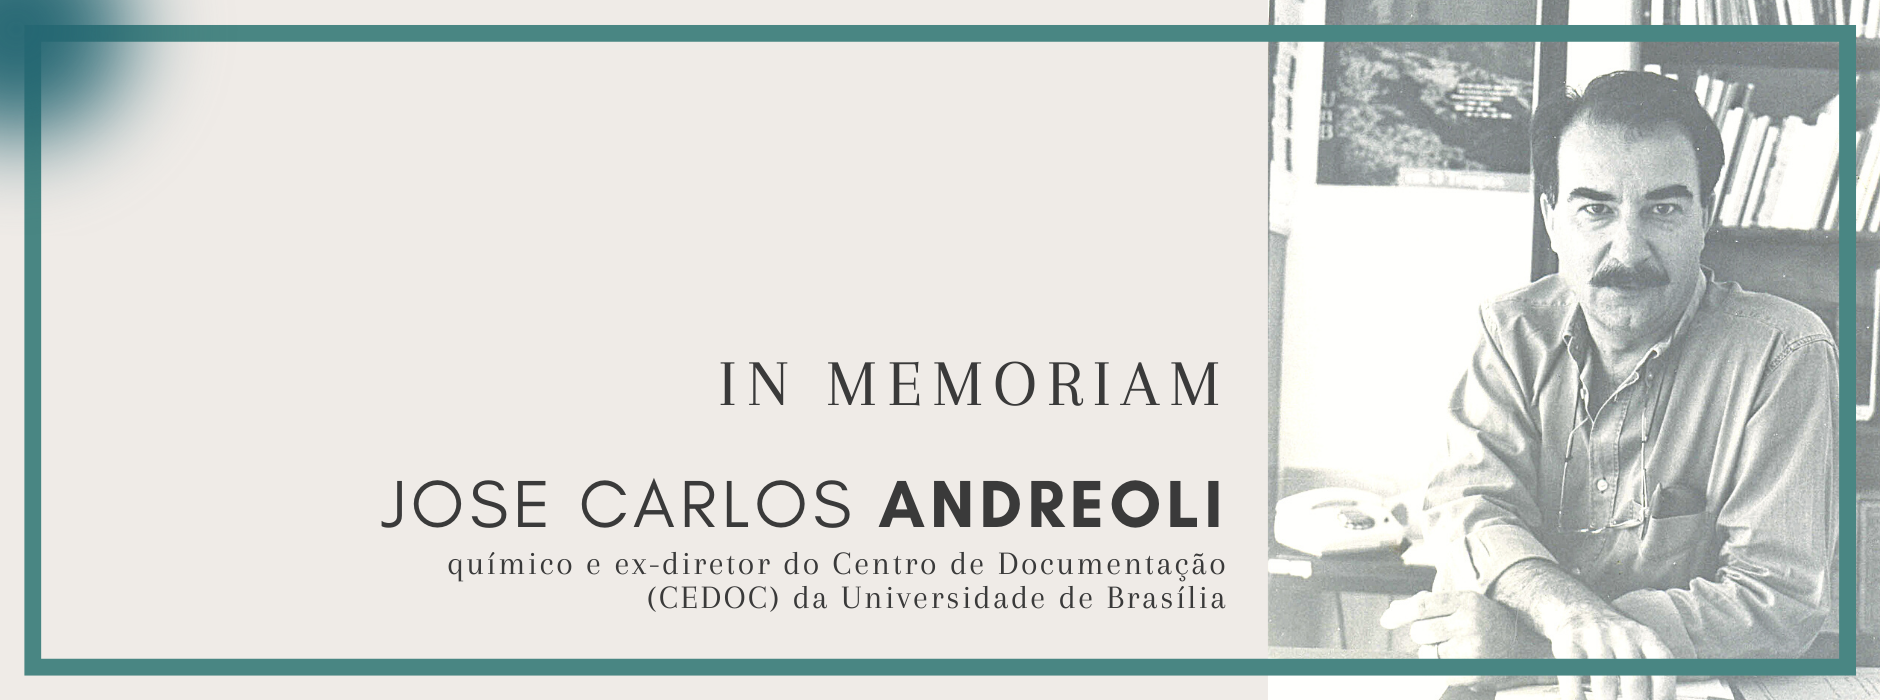 banner Jose Carlos Andreoli in memoriam